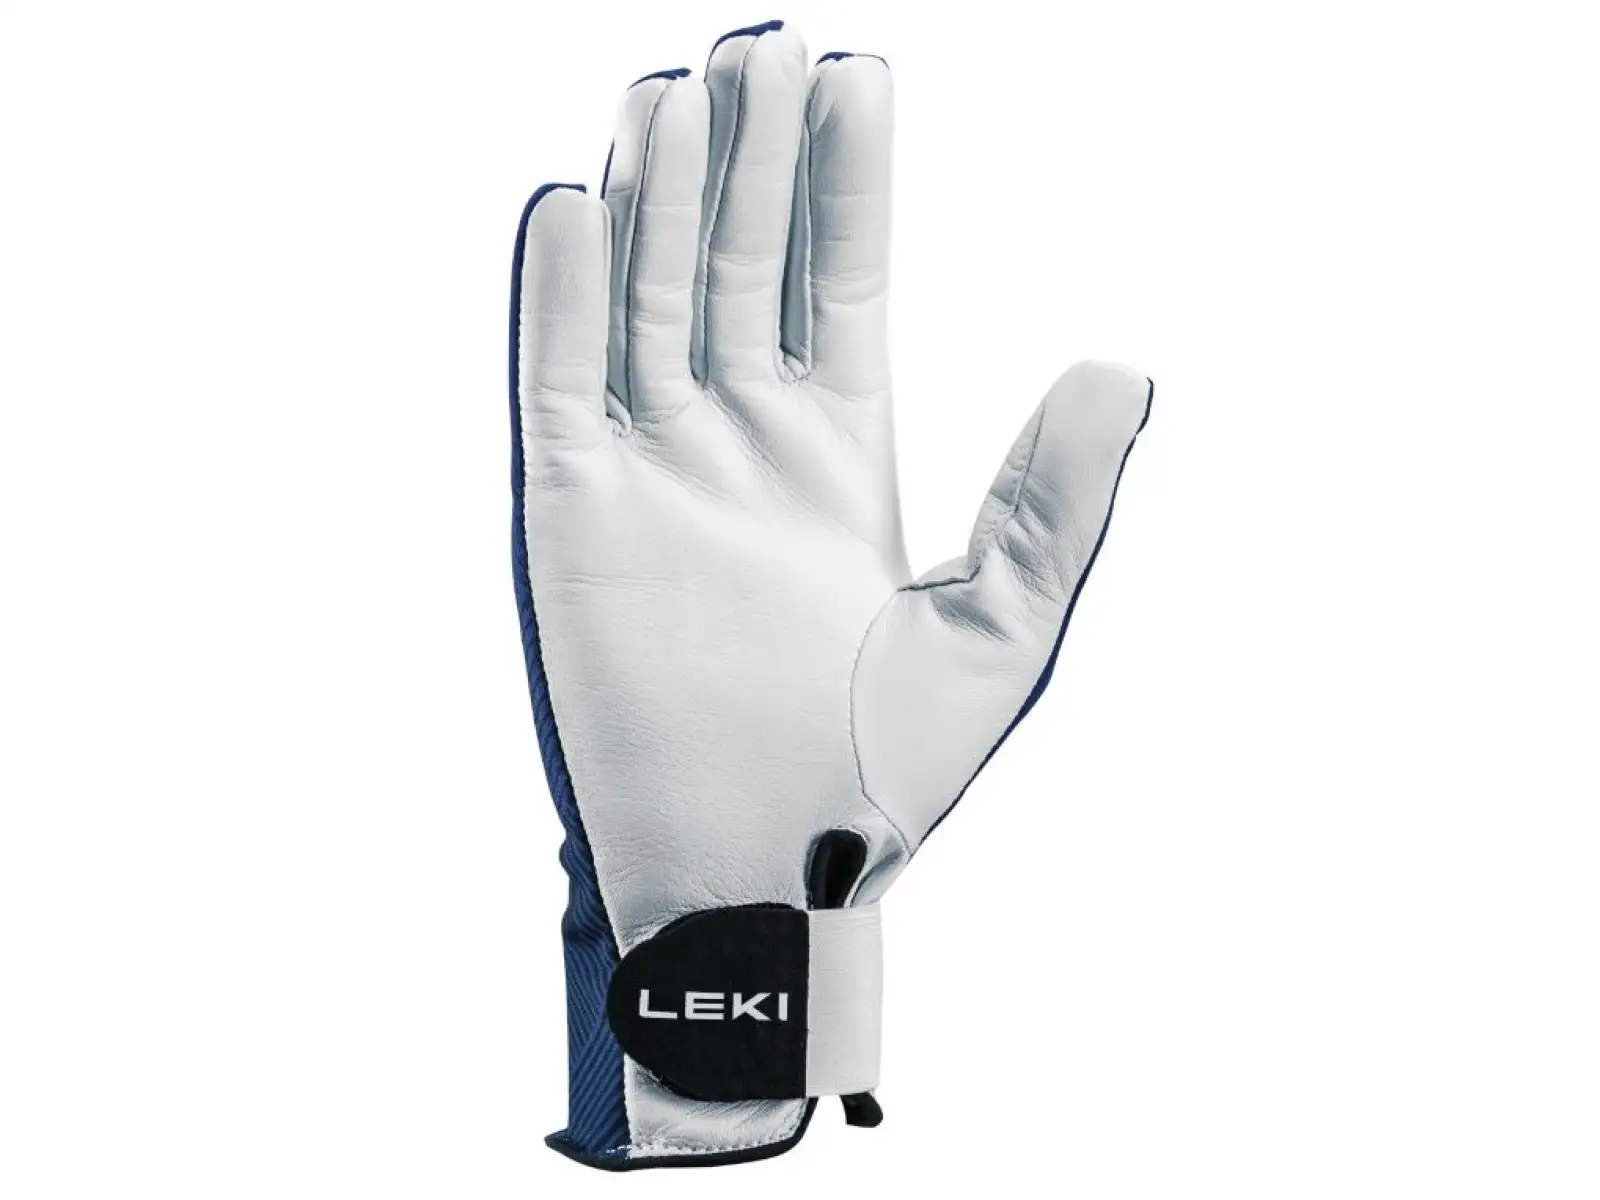 Leki Guide Premium rukavice Marine/White